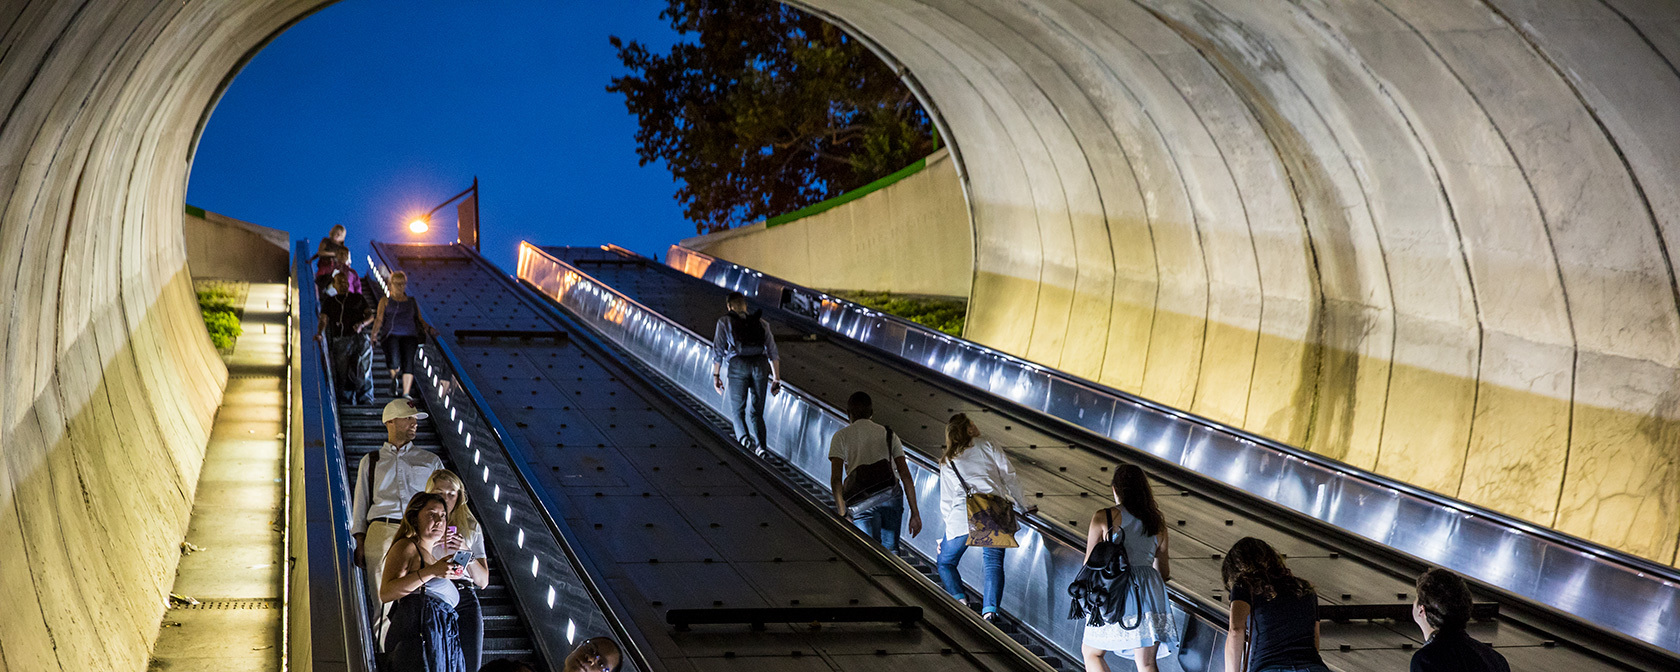 Passageiros do metrô na escada rolante na saída norte de Dupont Circle